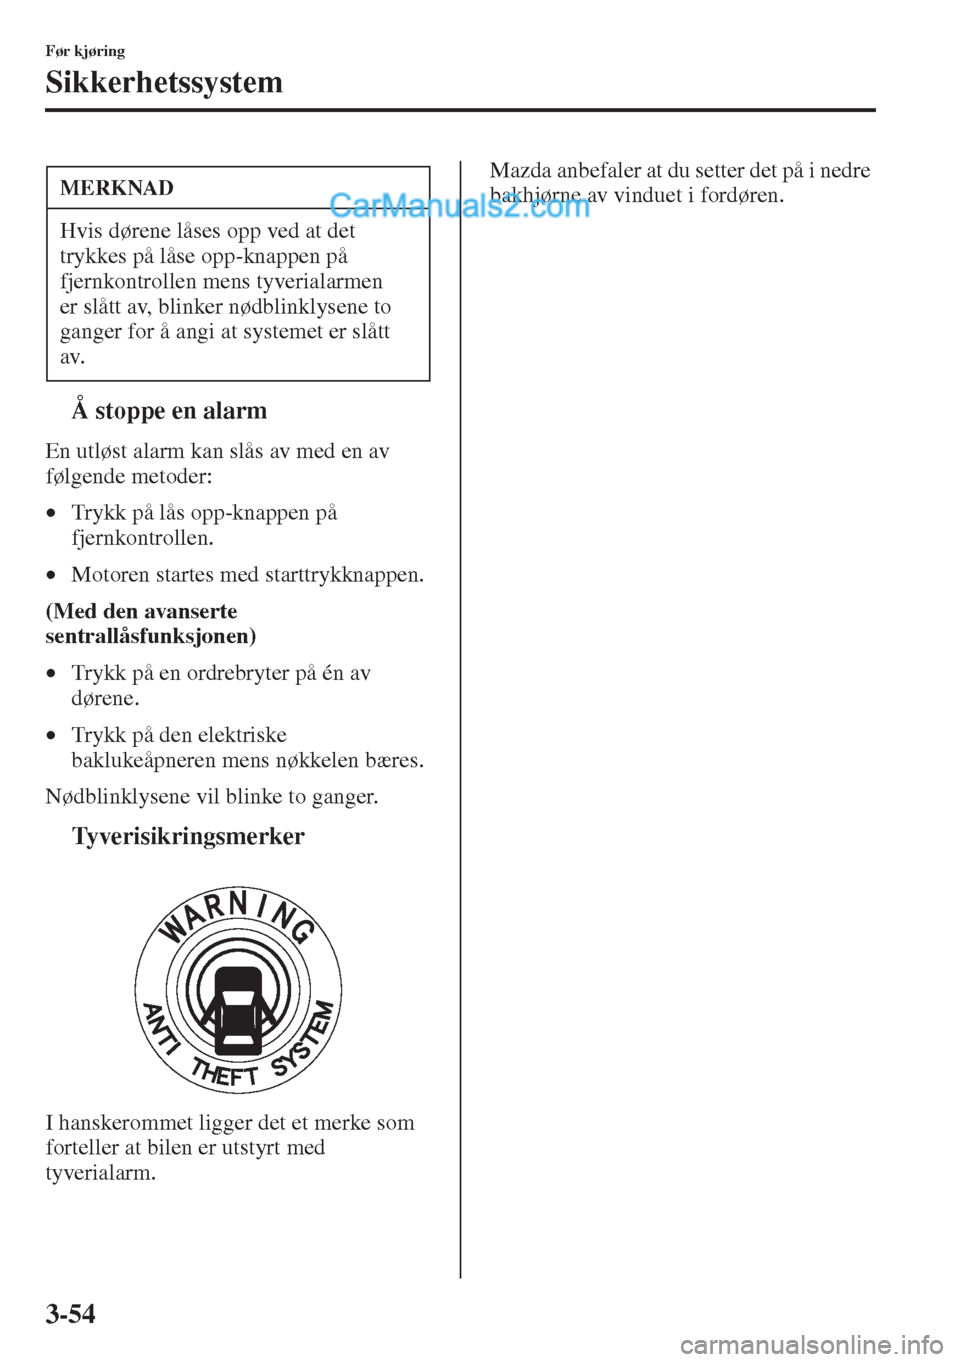 MAZDA MODEL CX-5 2015  Brukerhåndbok (in Norwegian) 3-54
Før kjøring
Sikkerhetssystem
tÅ stoppe en alarm
En utløst alarm kan slås av med en av 
følgende metoder:
•Trykk på lås opp-knappen på 
fjernkontrollen.
•Motoren startes med starttryk